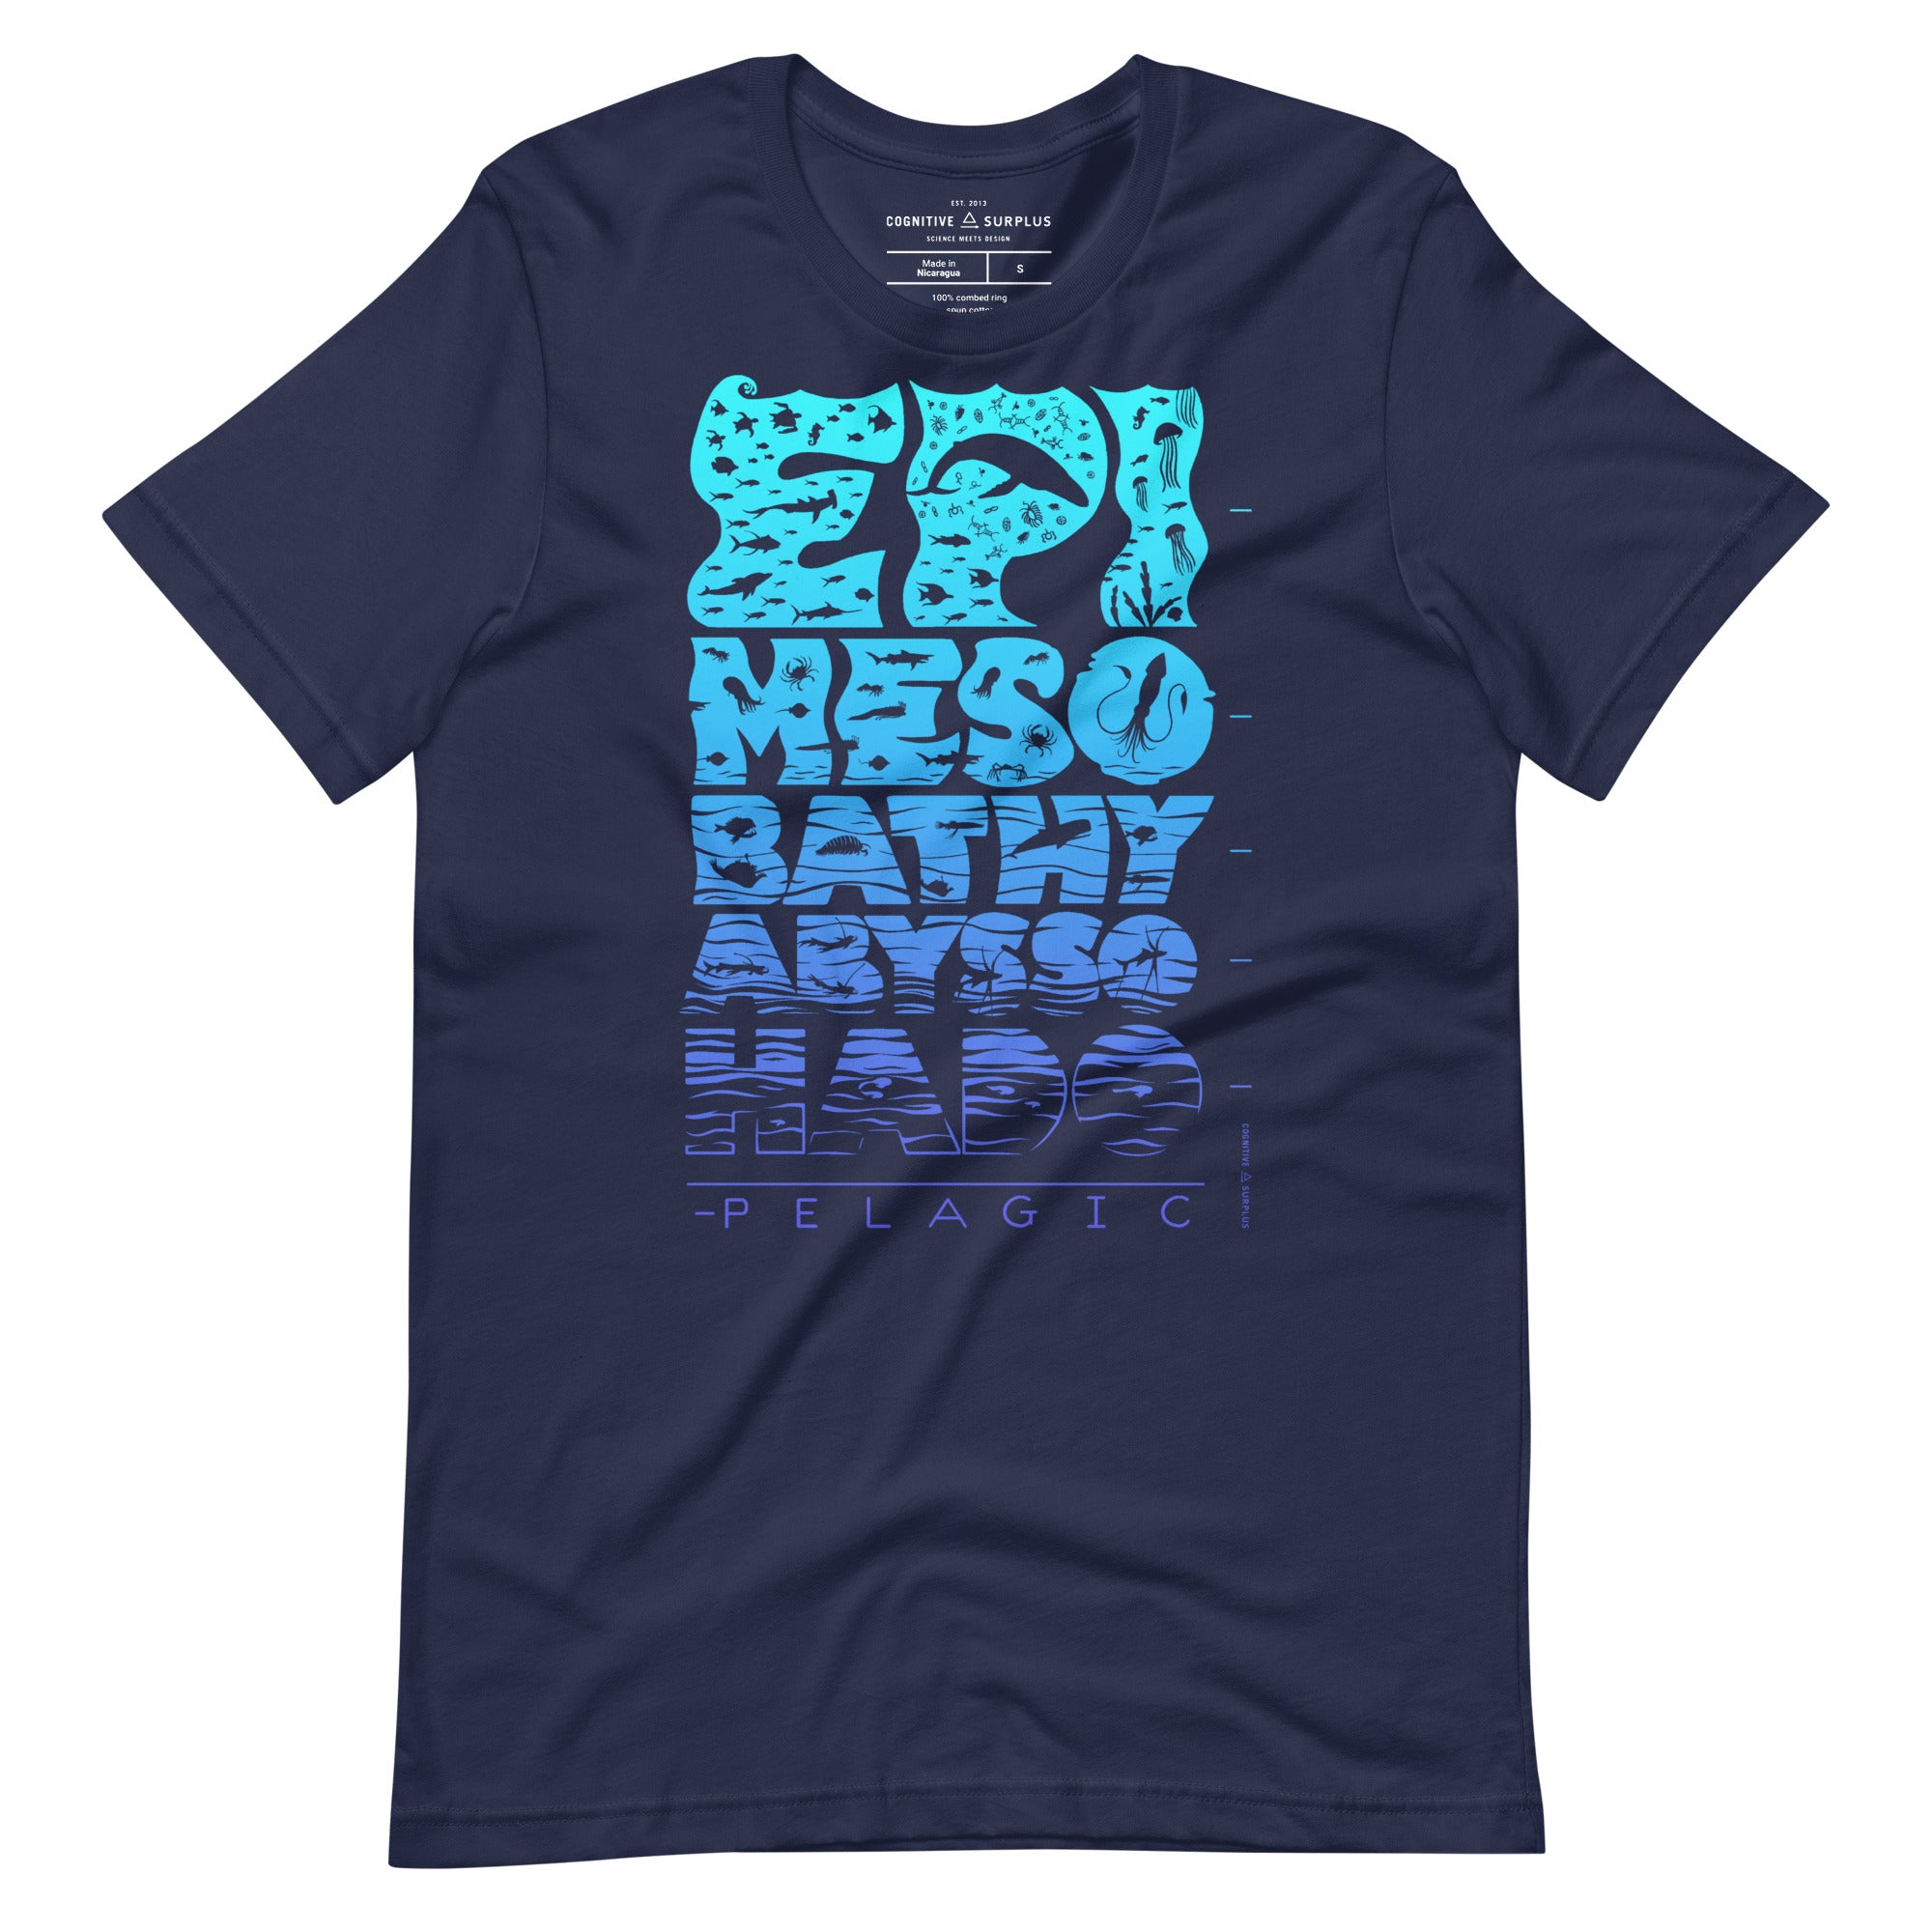 unisex-staple-t-shirt-navy-front-65370c8e9fc13.jpg